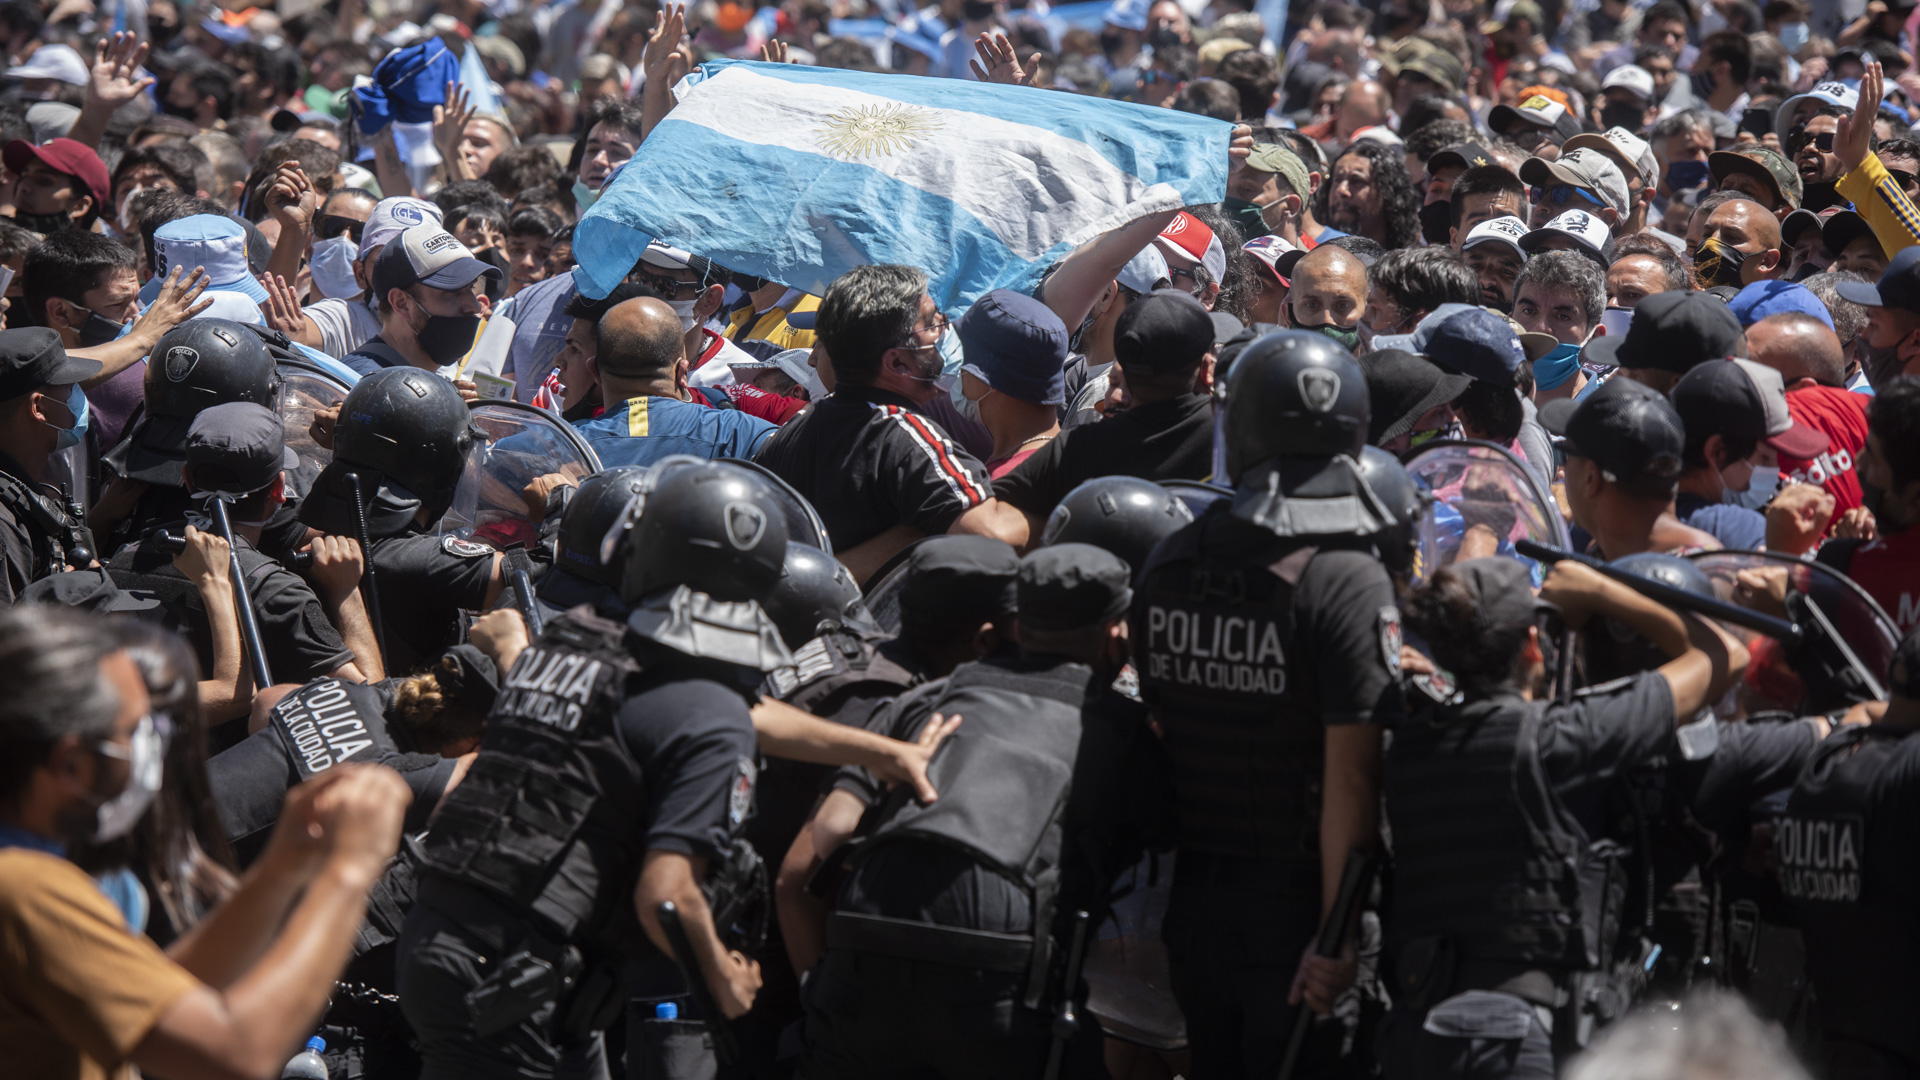 Se vivieron momentos de tensión y violencia en el último adiós a Maradona, con incidentes que incluyeron aglomeraciones, empujones, botellazos y hasta enfrentamientos cuerpo a cuerpo con la policía (Adrián Escandar)